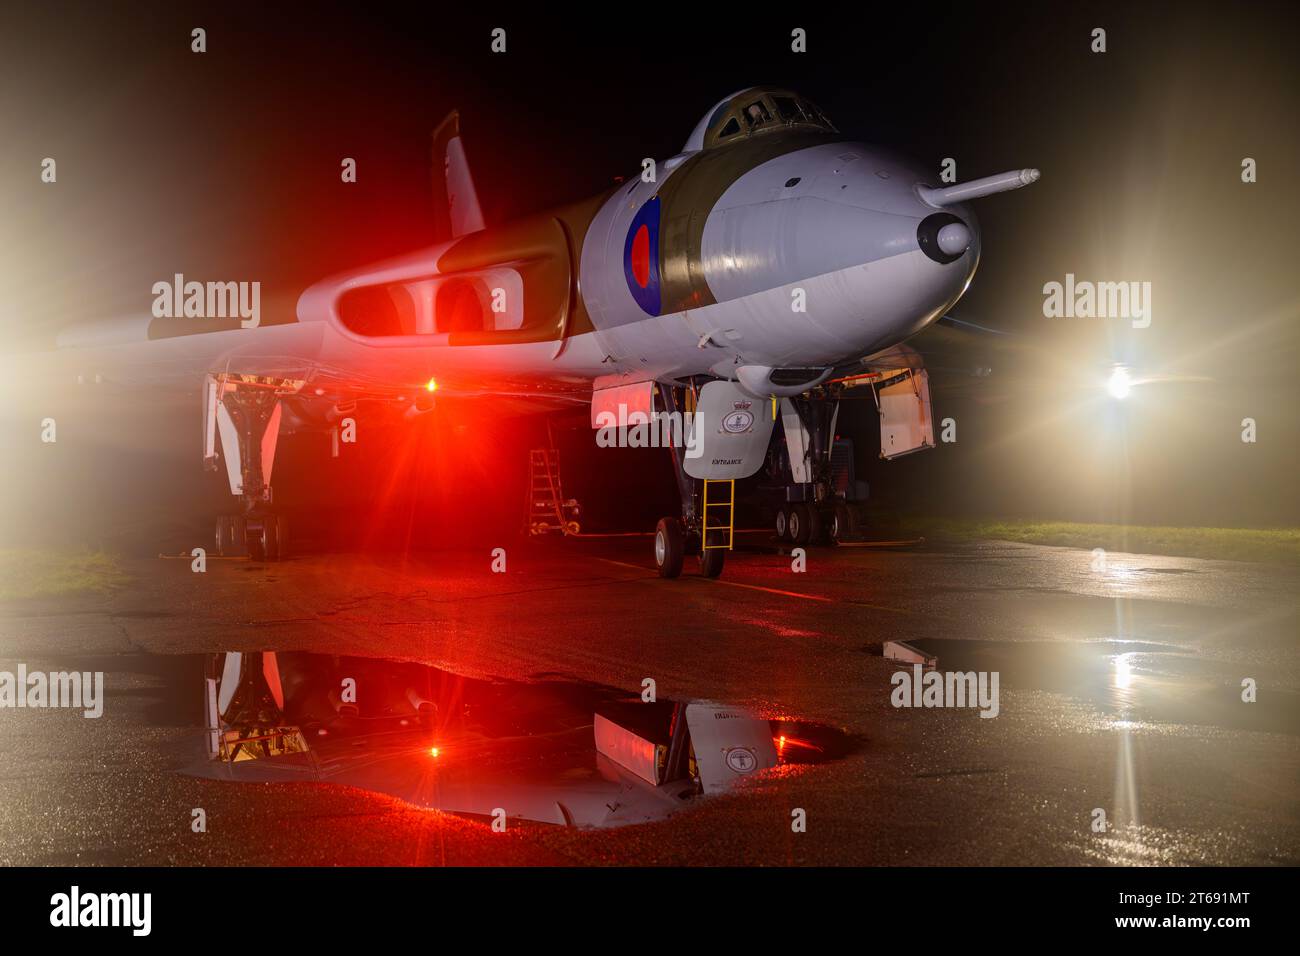 Avro Vulcan XM655 la nuit avec les portes de la bombe ouvertes et les lumières de l'avion allumées Banque D'Images